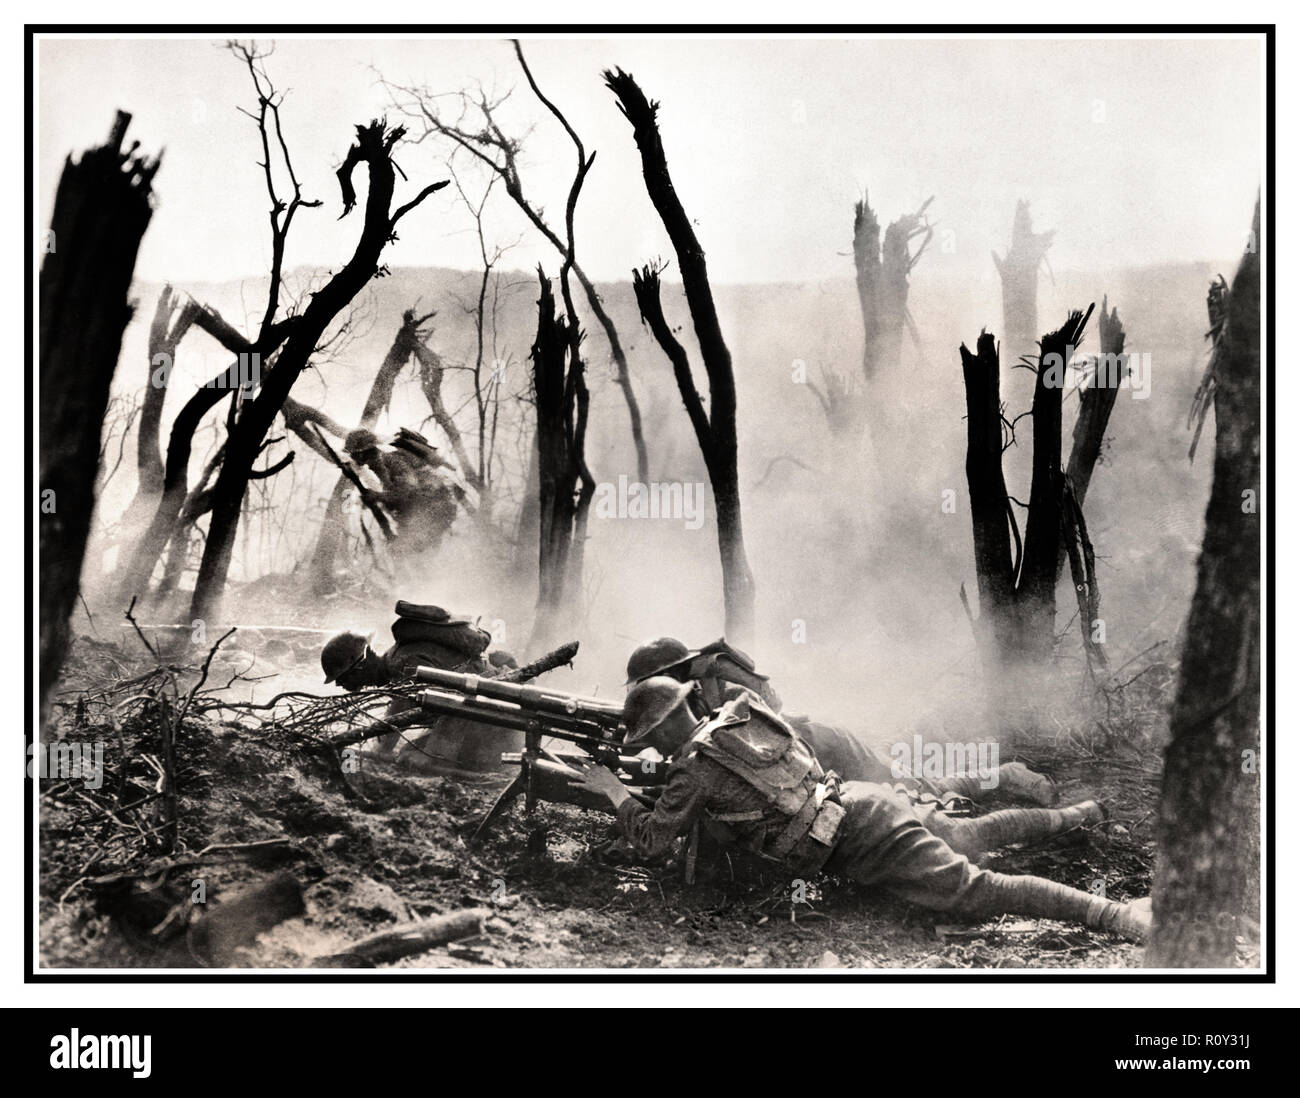 WW1 Machine Gun crew de quartier général du Régiment d'infanterie, 23e compagnie, tirant 37mm gun pendant une avance sur l'Allemand des positions tranchées dans la forêt d'Argonne 1918 France 1 Guerre mondiale première guerre mondiale l'Offensive Meuse-Argonne (également connu sous le nom de batailles de la Meuse-Argonne et la campagne Meuse-Argonne) a été une grande partie de la dernière offensive des Alliés de la Première Guerre mondiale, qui s'étendait le long de la Western Front de la Première Guerre mondiale ou Grande Guerre (image traitée pour révéler l'impact d'origine et de la qualité) stark remarquable image prise sous le feu.. Banque D'Images